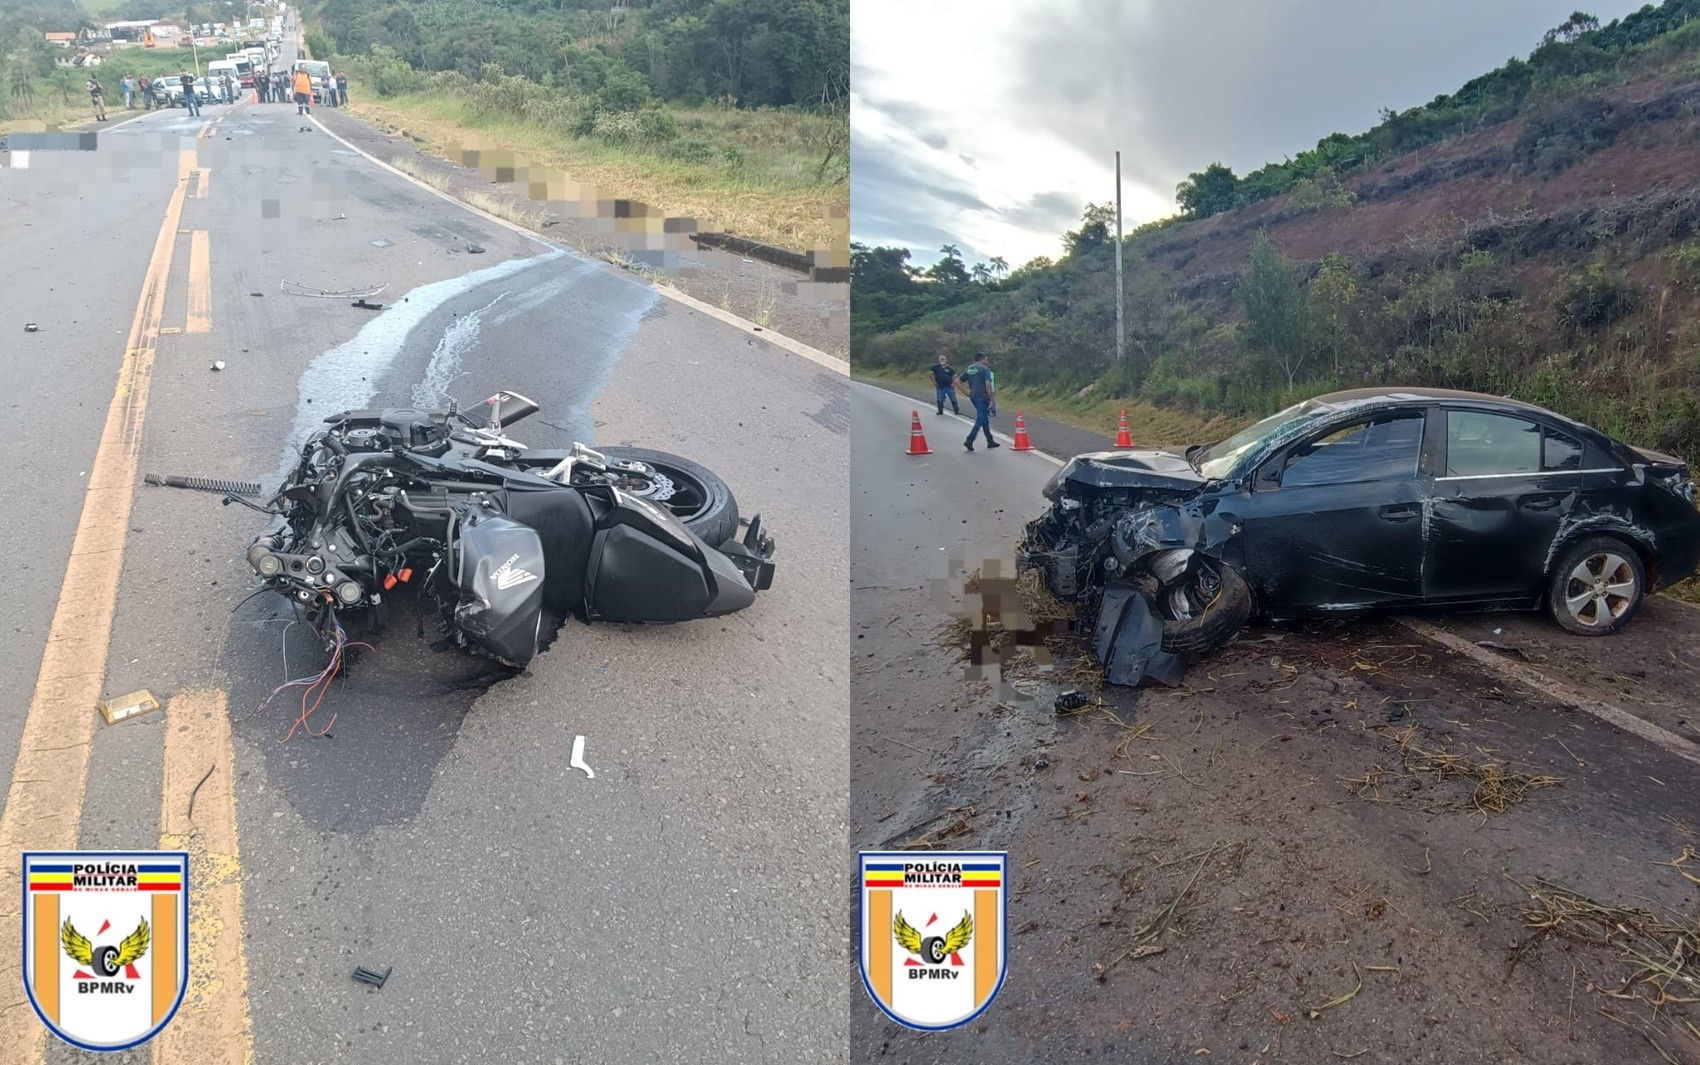 Motociclista morre após bater de frente com carro em ultrapassagem na MG-267, em Campestre, MG